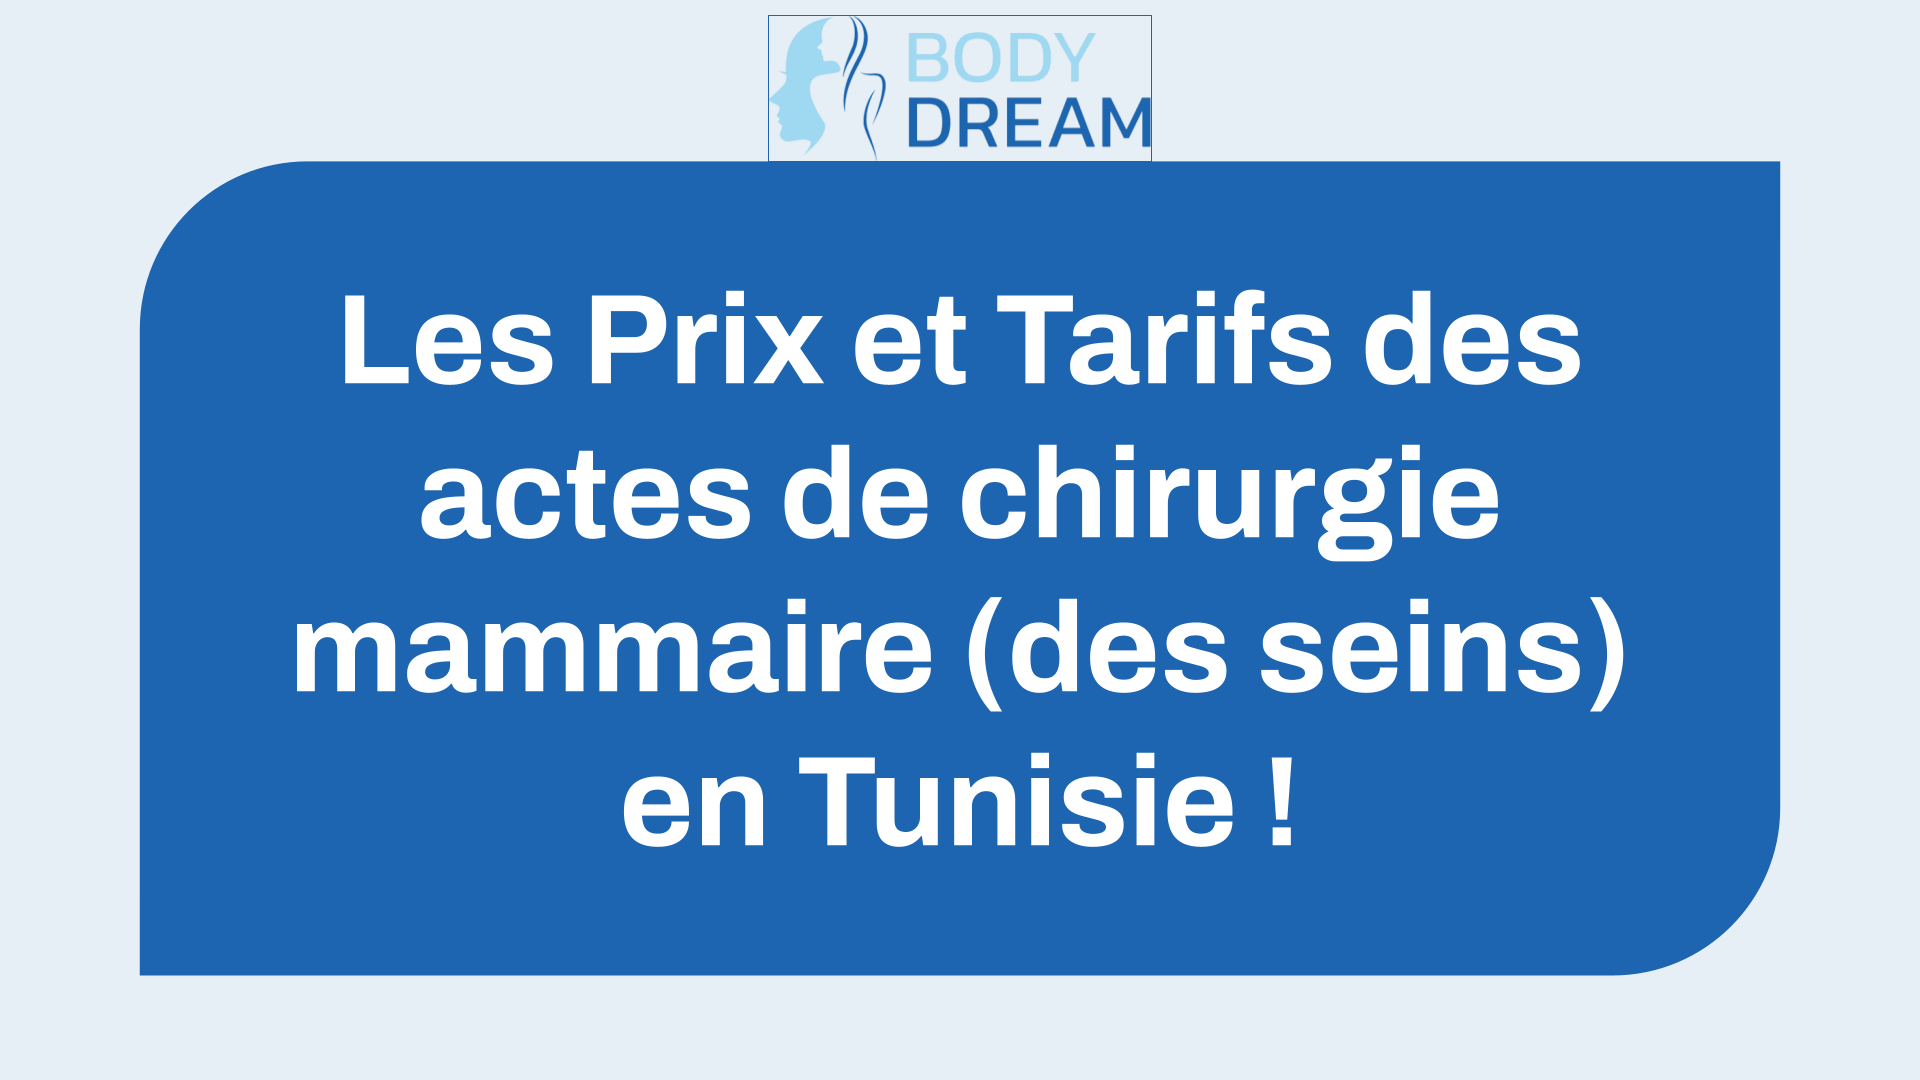 Les 5 Prix et Tarifs des actes de chirurgie mammaire (des seins) en Tunisie !